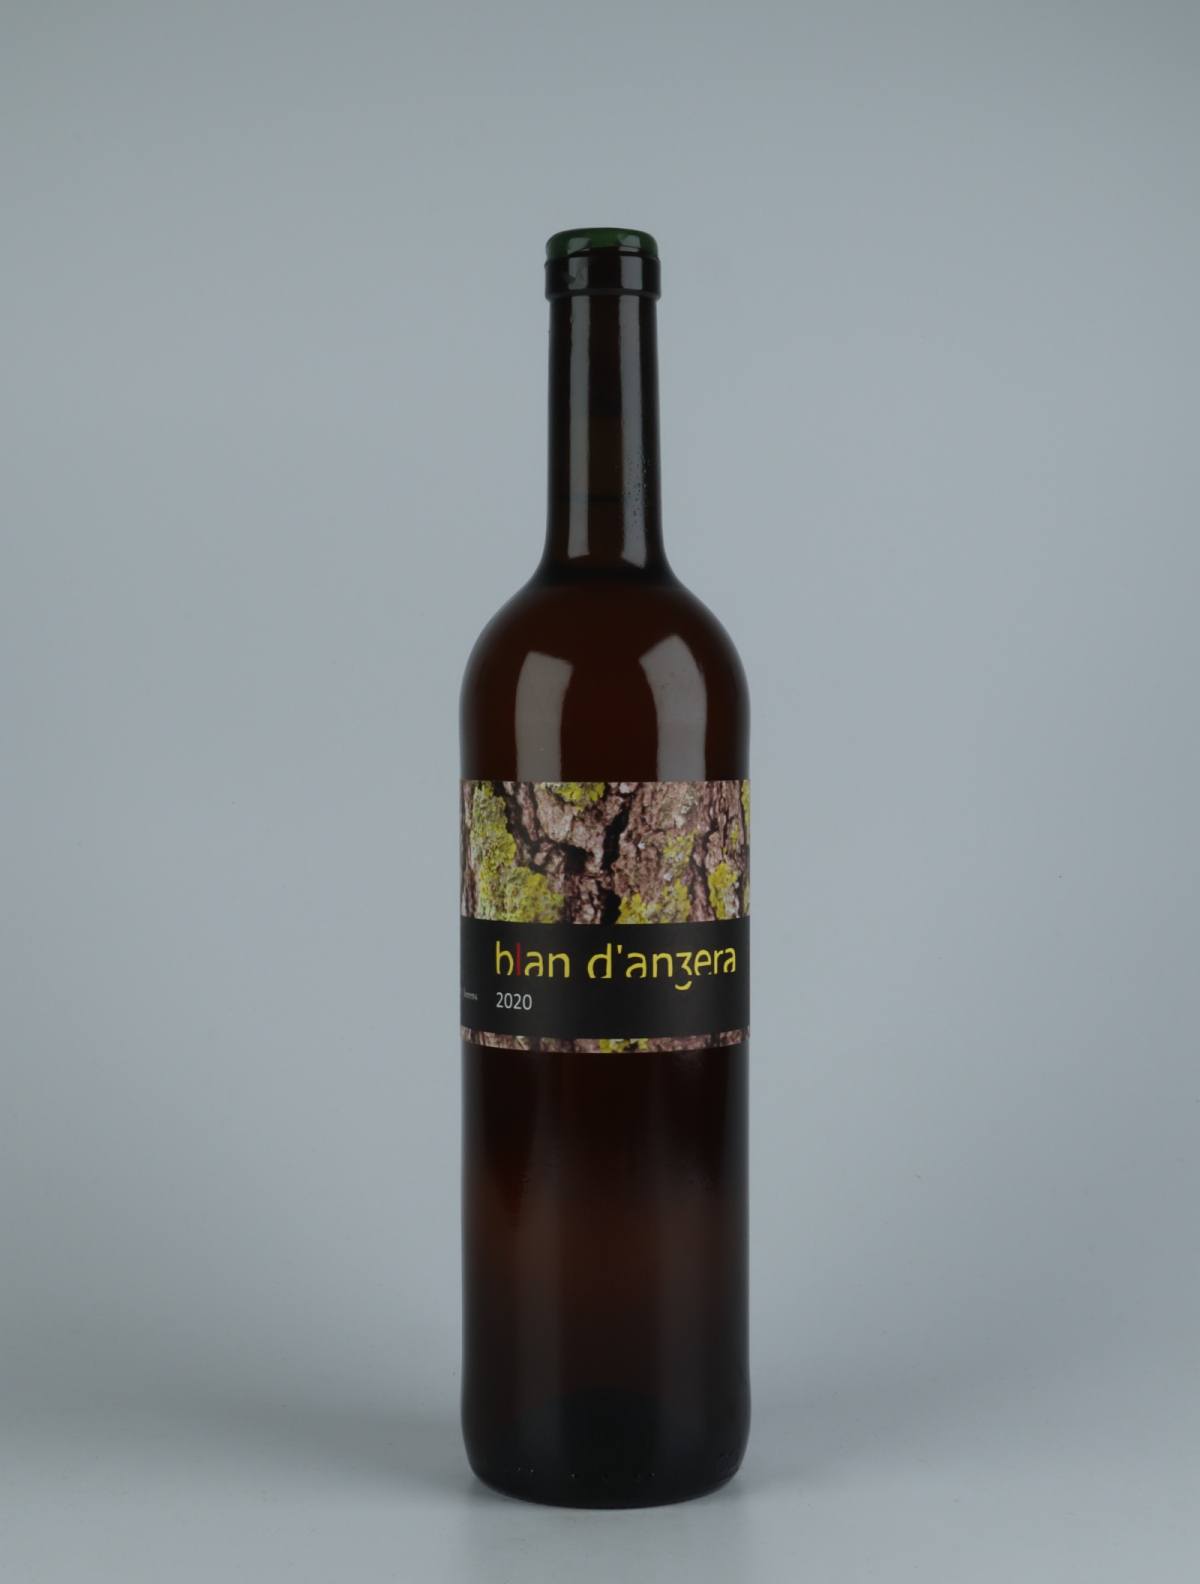 A bottle 2020 Blan d'Anzera Orange wine from Jordi Llorens, Catalonia in Spain